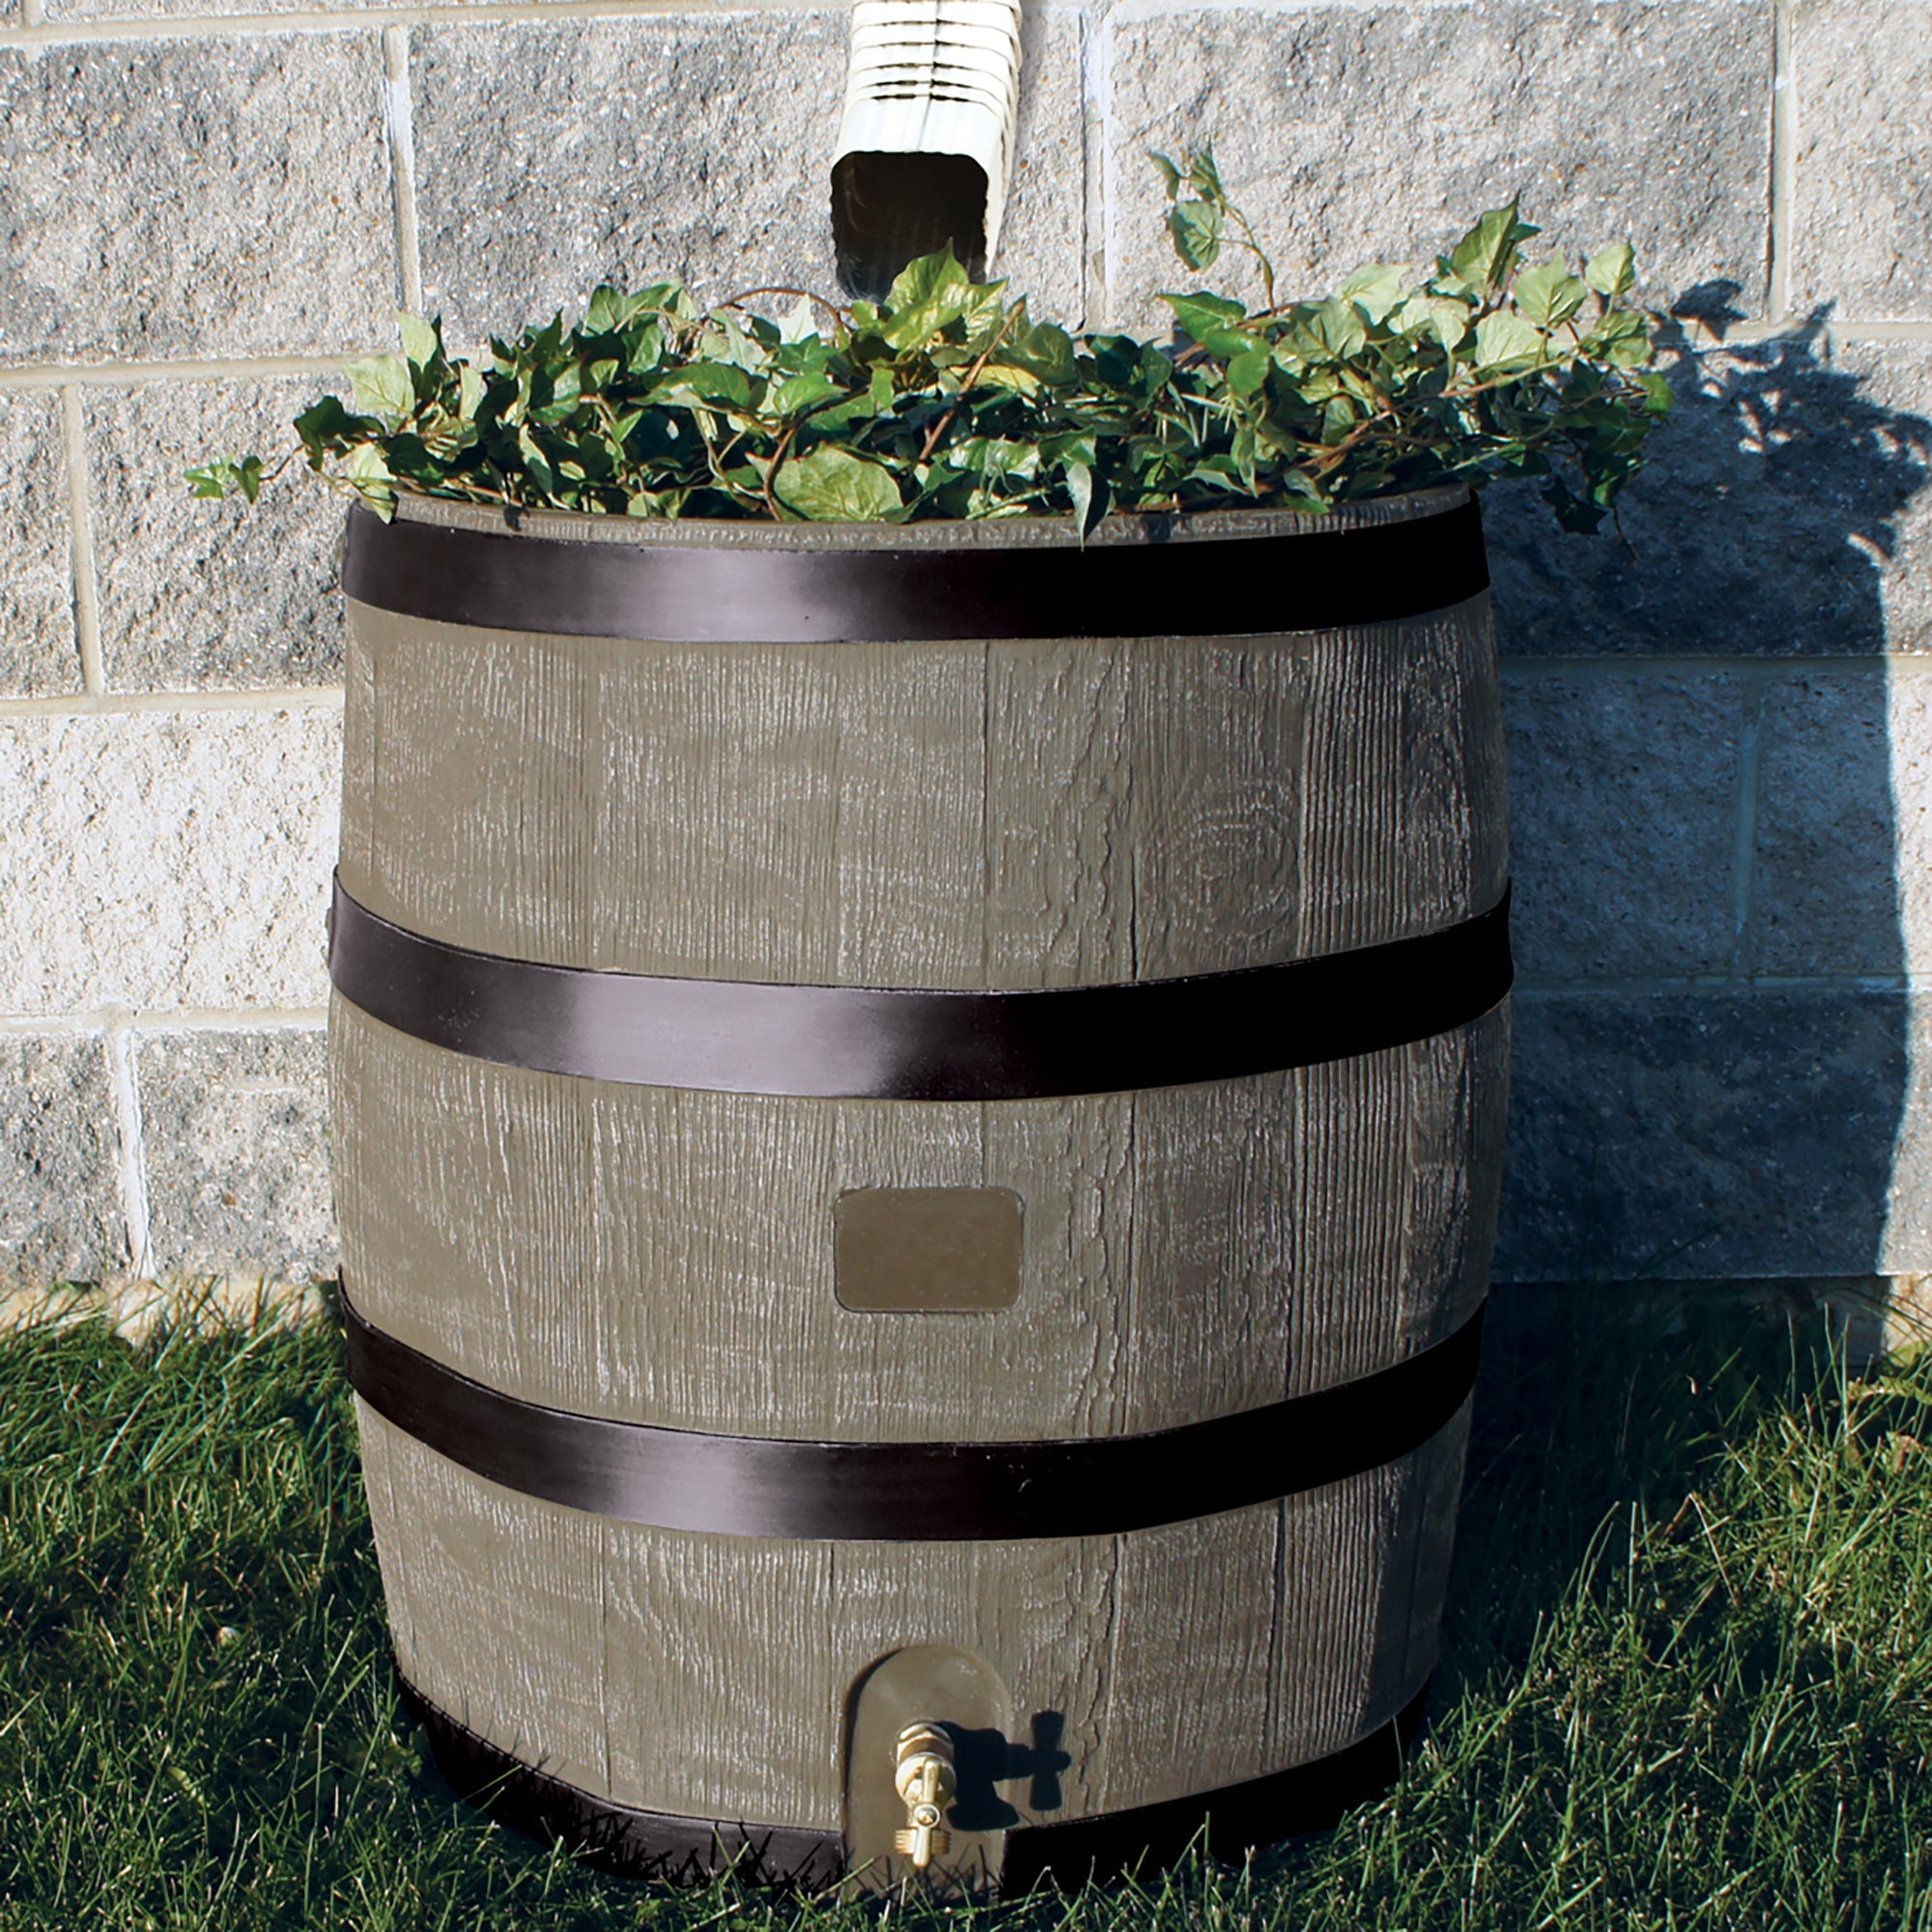 35 Gallon Round Rain Barrel With Planter